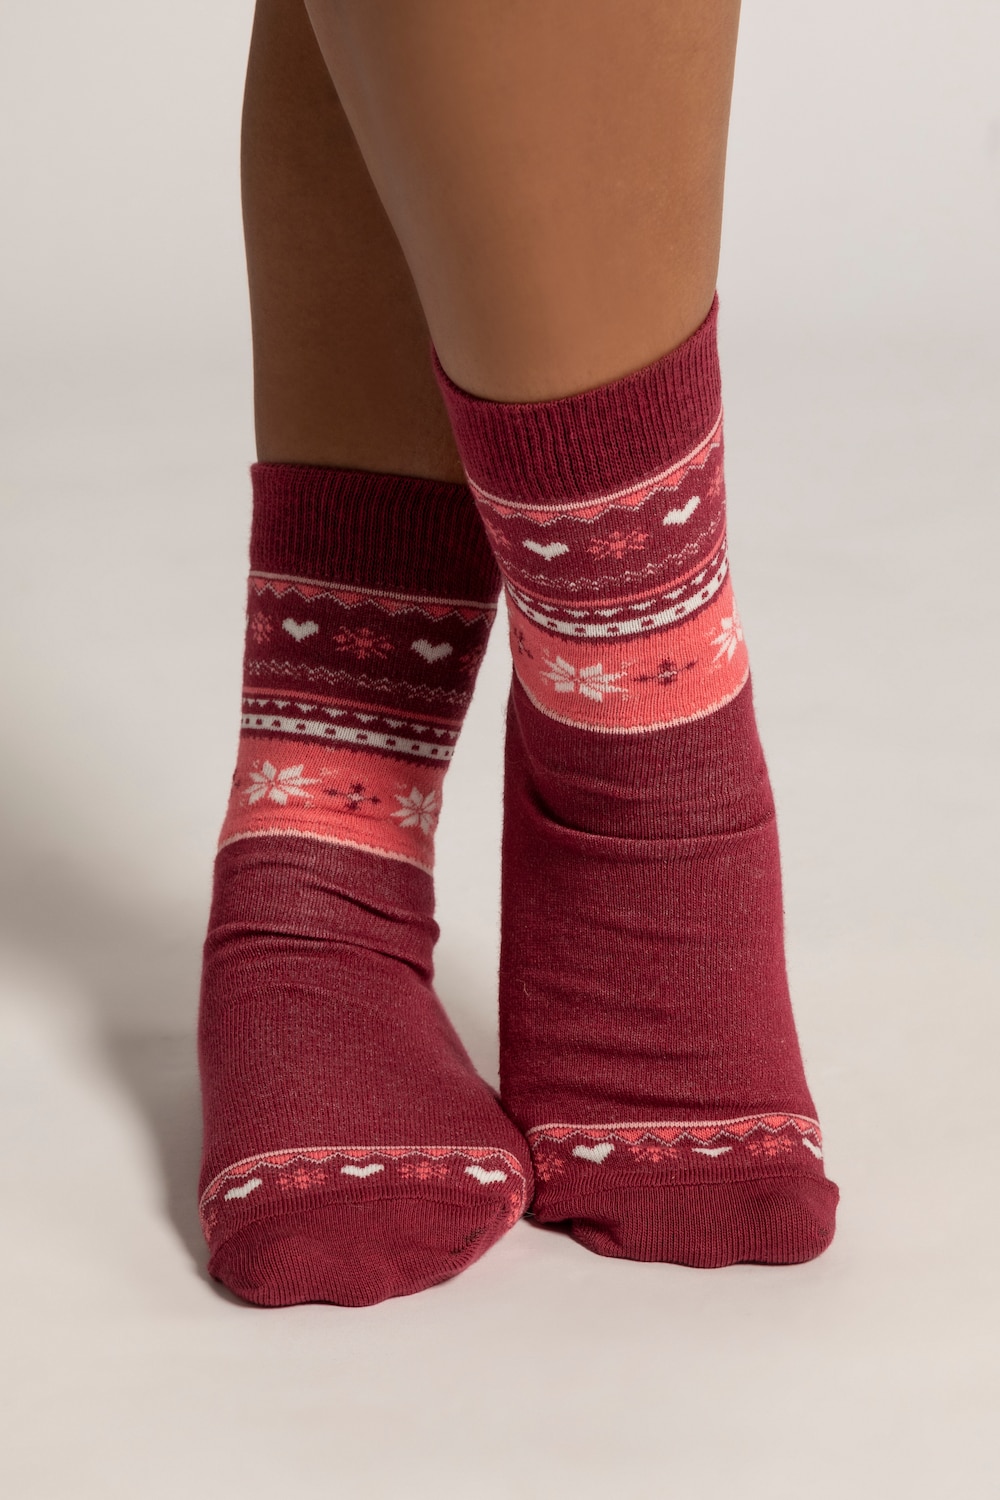 Große Größen Socken, Damen, rot, Größe: 39-42, Baumwolle/Synthetische Fasern, Ulla Popken von Ulla Popken